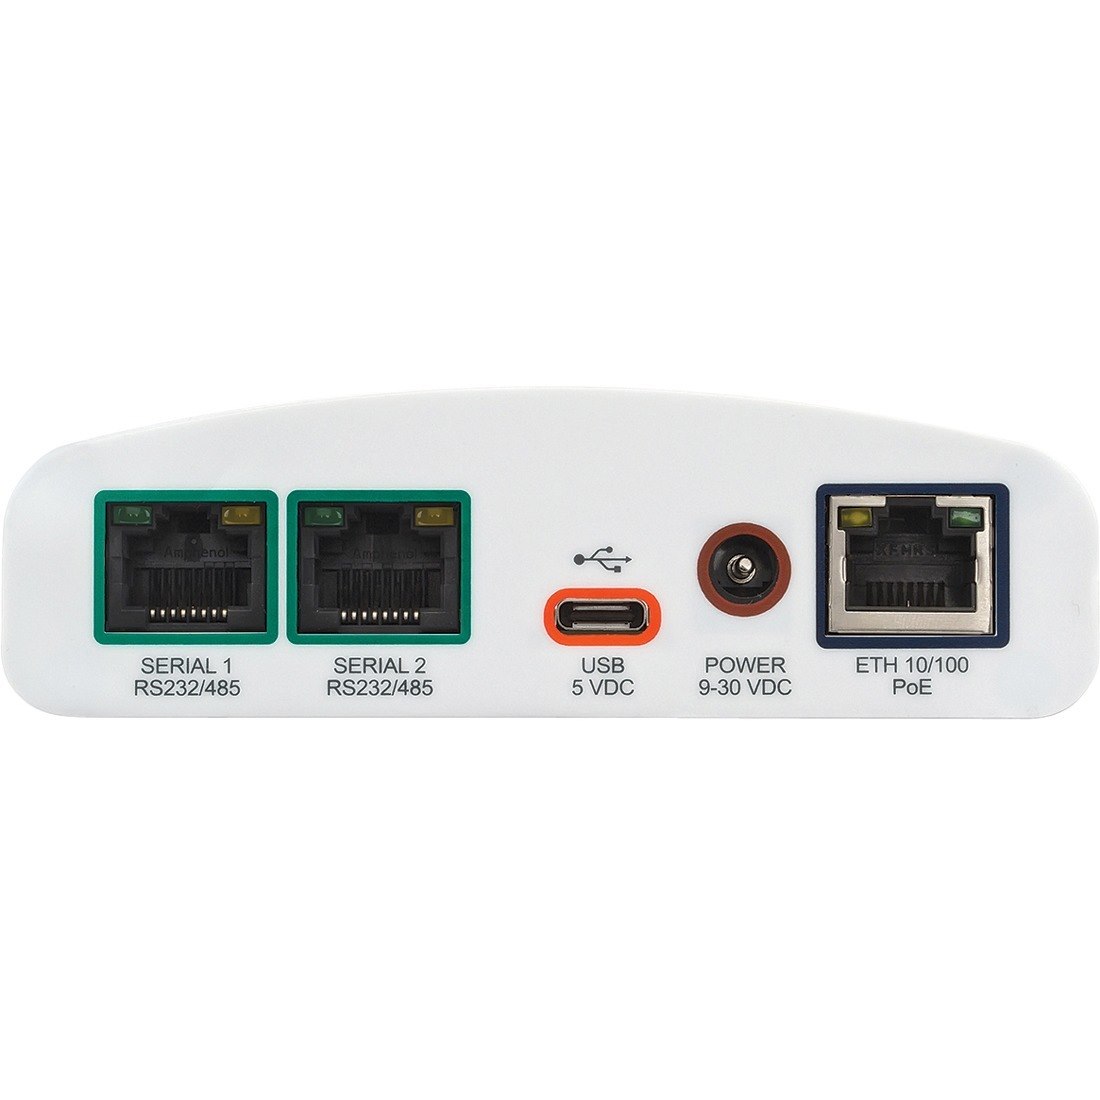 Lantronix SGX 5150 Wireless IoT Gateway, 802.11a/b/g/n/ac, 1xRS232 (RJ45), USB, 10/100 Ethernet, EU Model